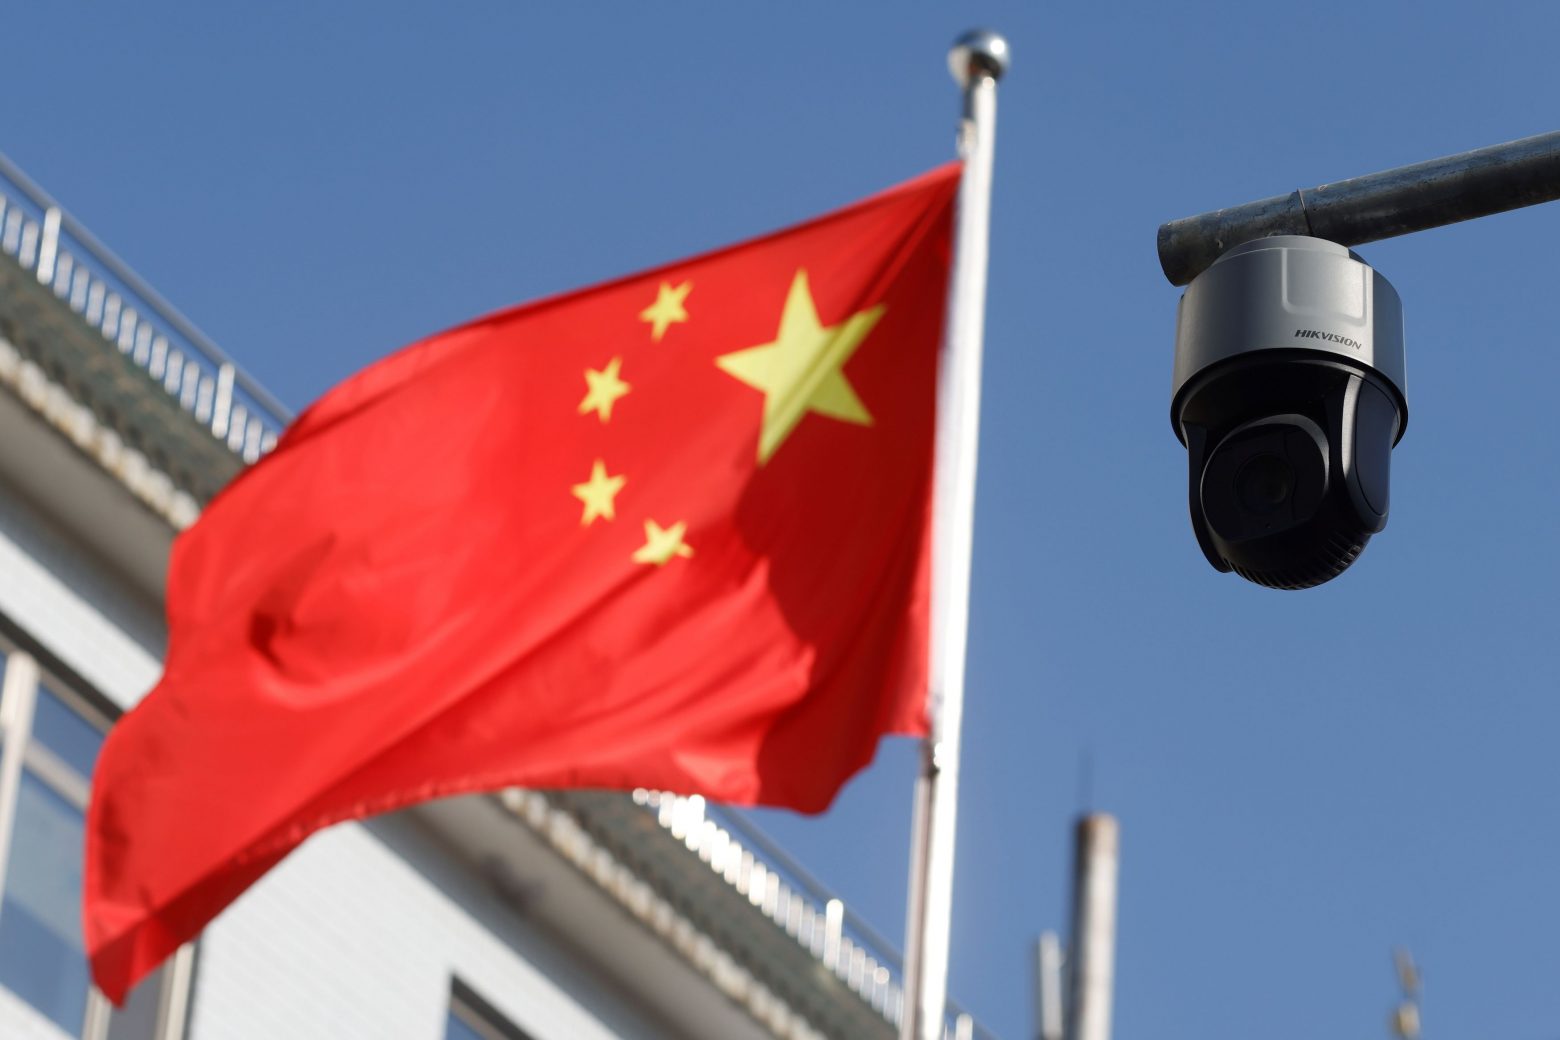 Κάμερες βιομετρικής αναγνώρισης θα παρακολουθούν τους δημοσιογράφους στην Κίνα